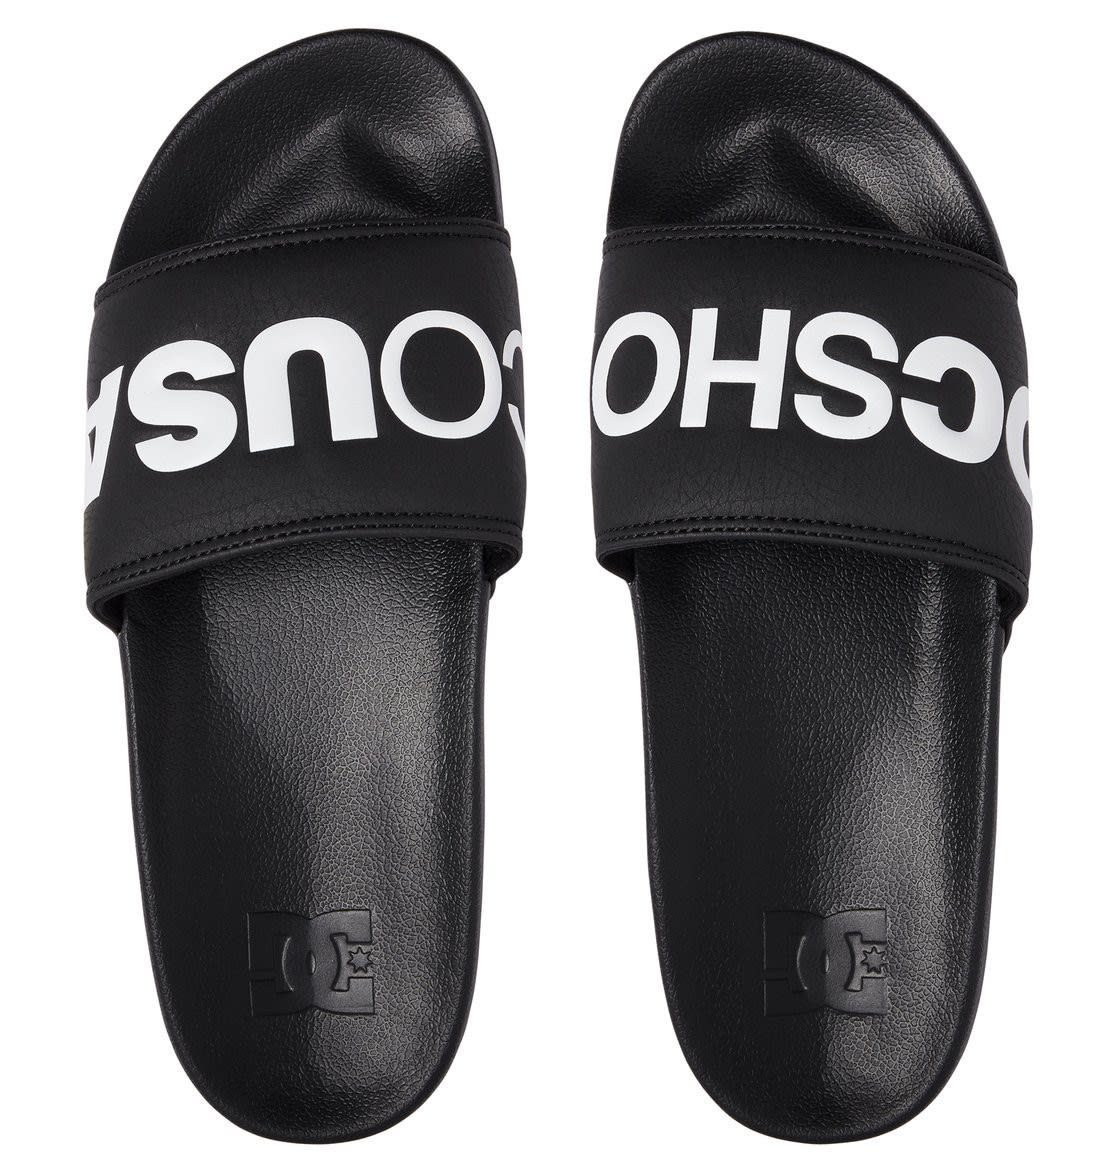 Badesandale Sandale Sandal Herren Shoes Slide DC Dc schwarz Dc M